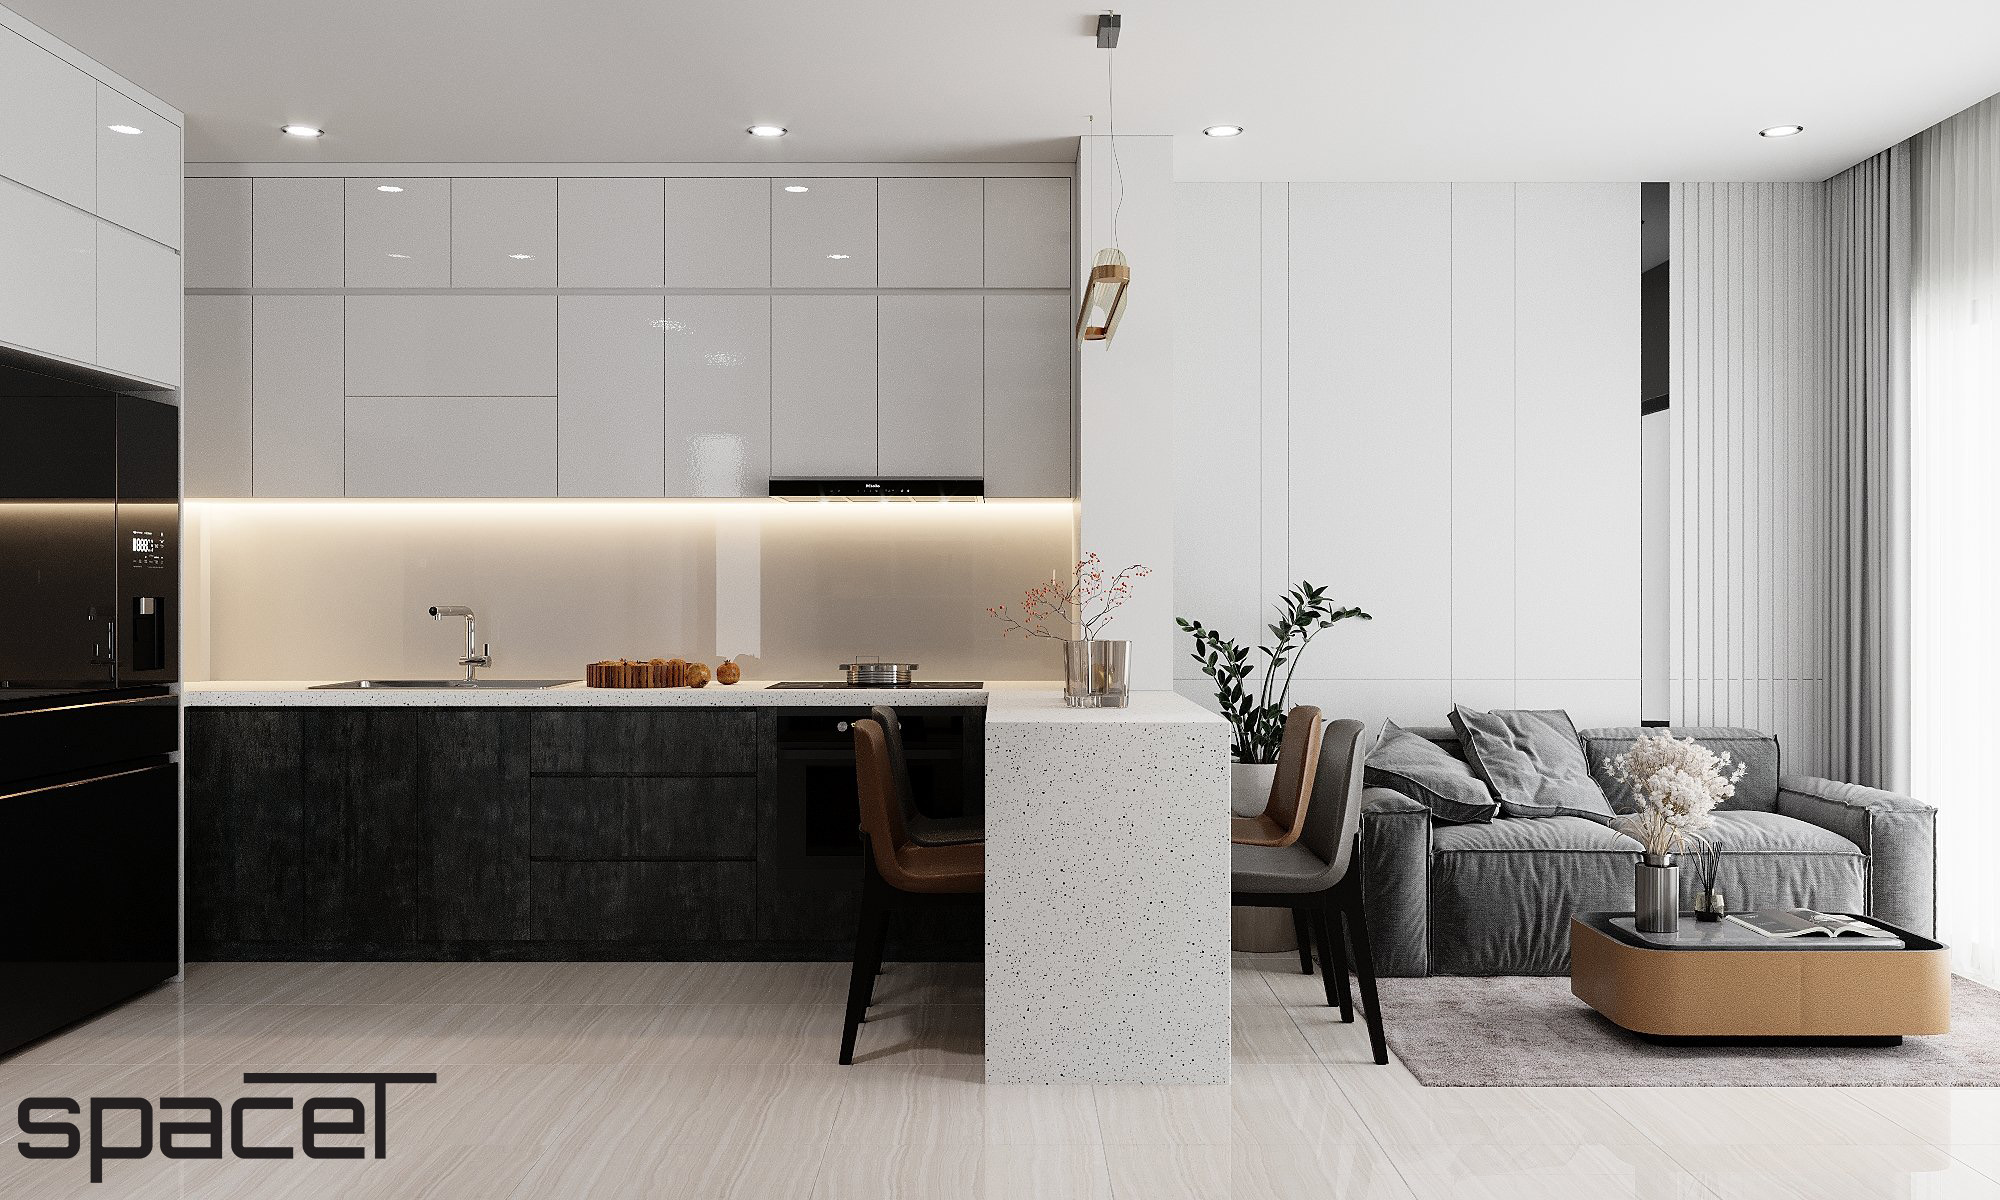 Phòng bếp, phòng ăn, phong cách Hiện đại Modern, thiết kế concept nội thất, căn hộ The Origami Vinhomes Grand Park